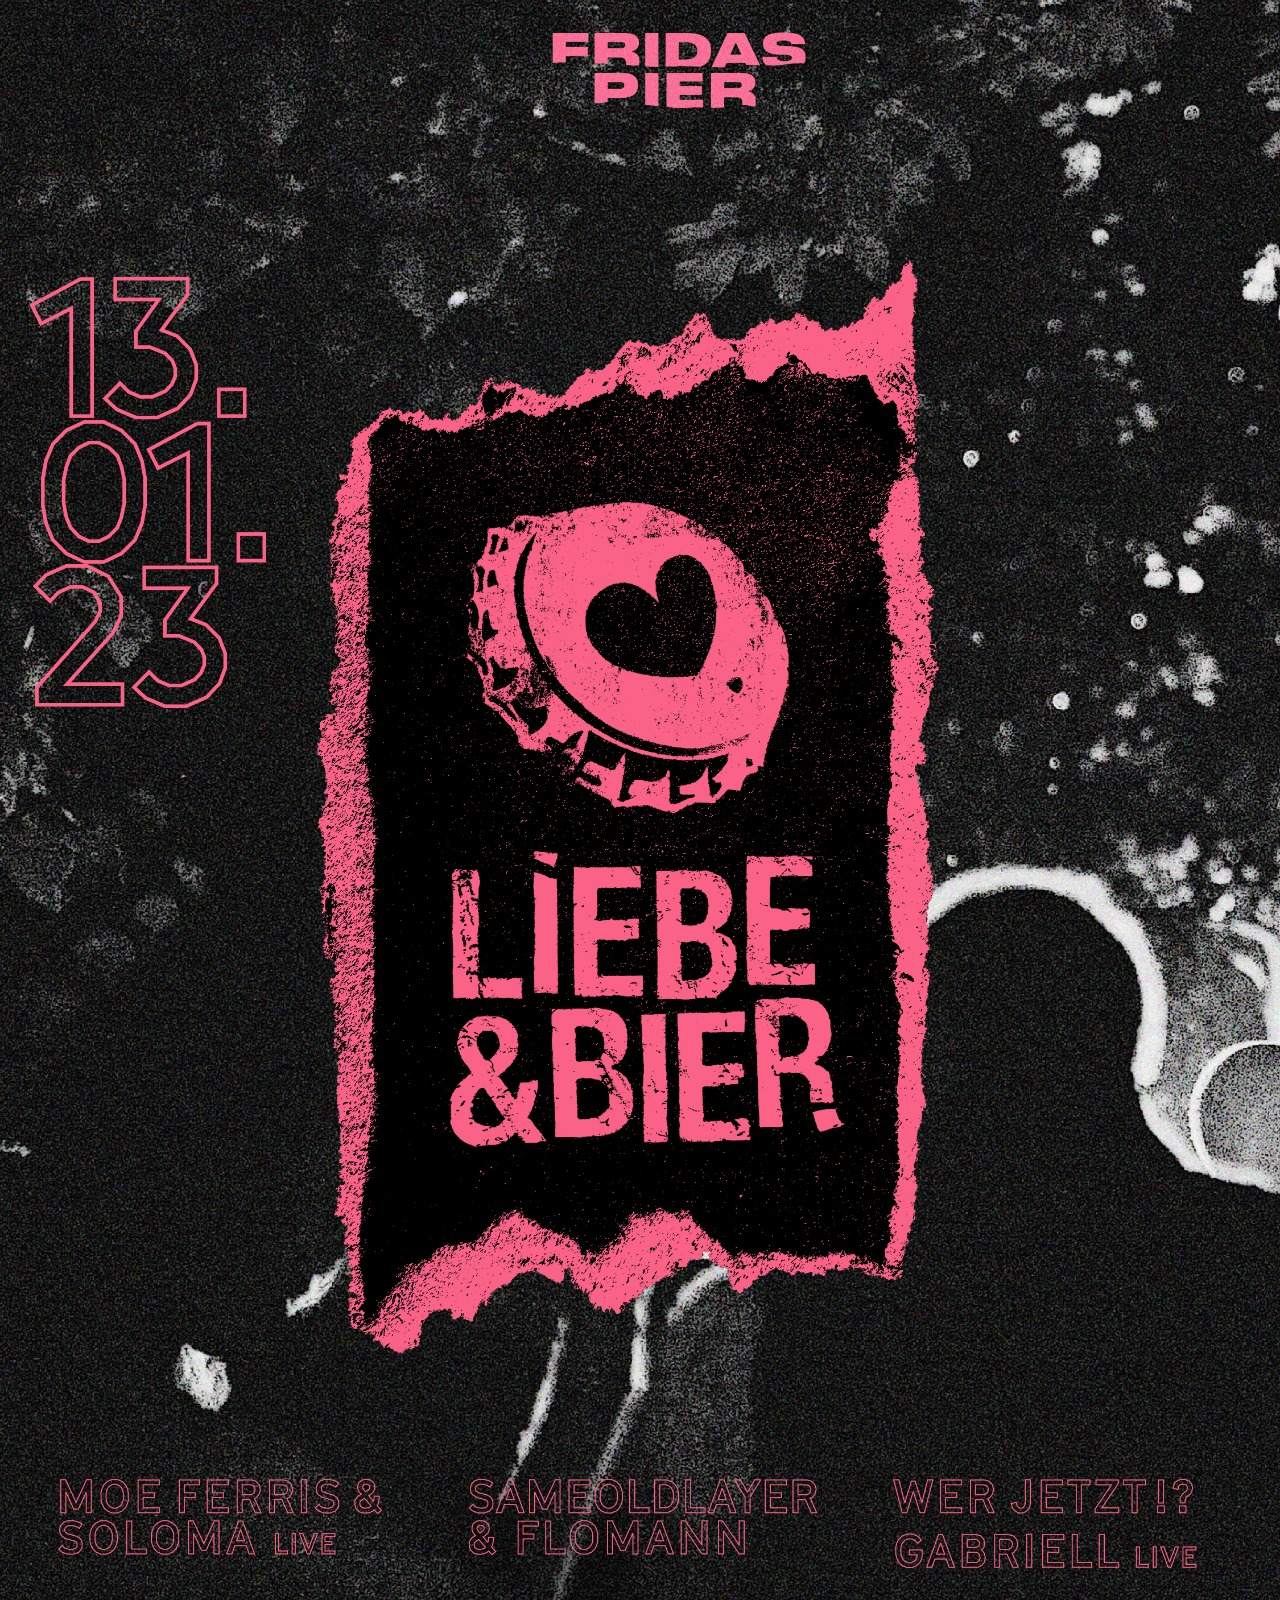 LIEBE & BIER x Fridas Pier - フライヤー表